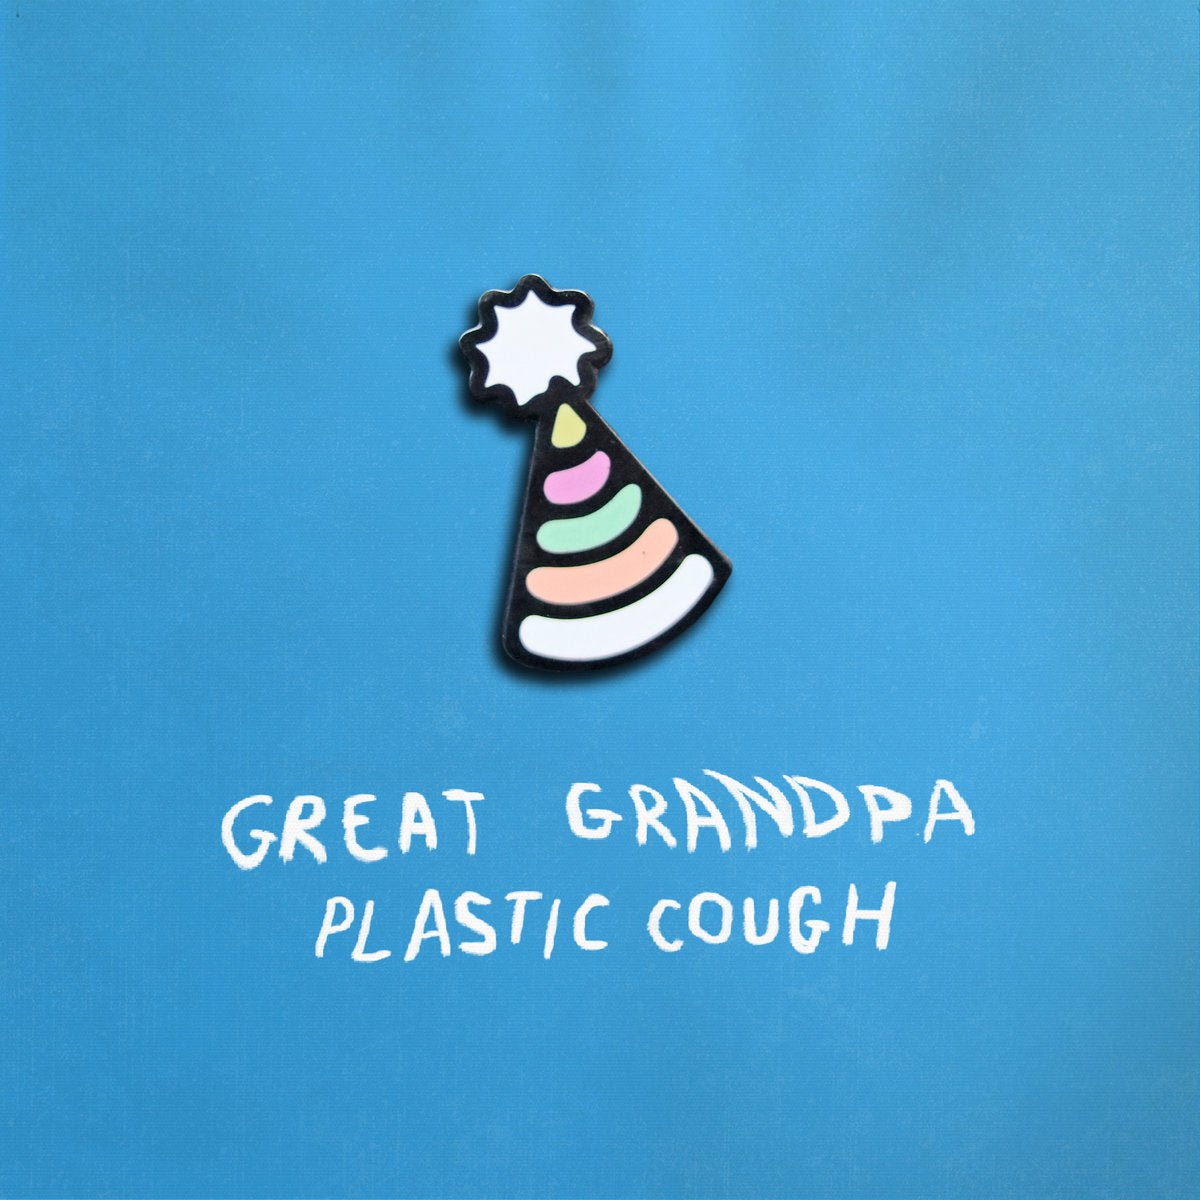 Great Grandpa - Plastic Cough LP - Vinyl - Double Double Whammy